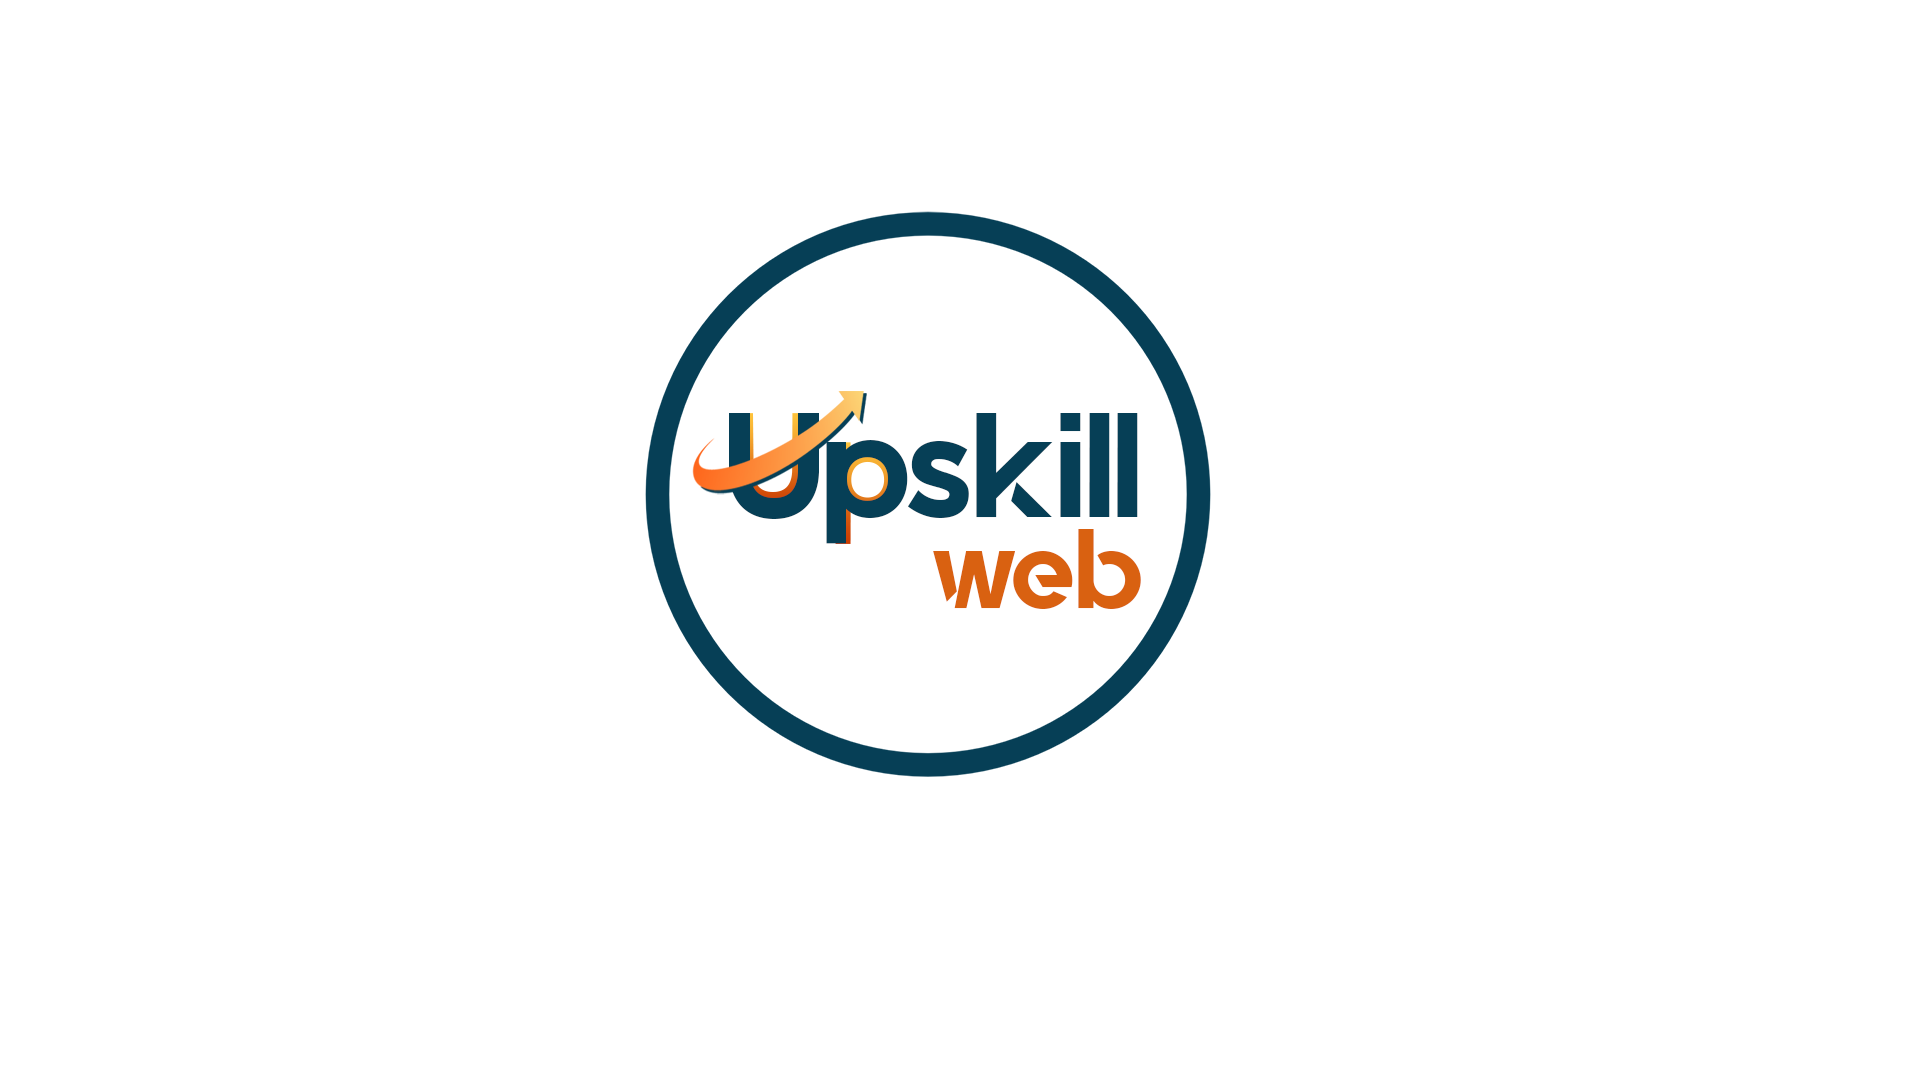 Company logo of upskillweb